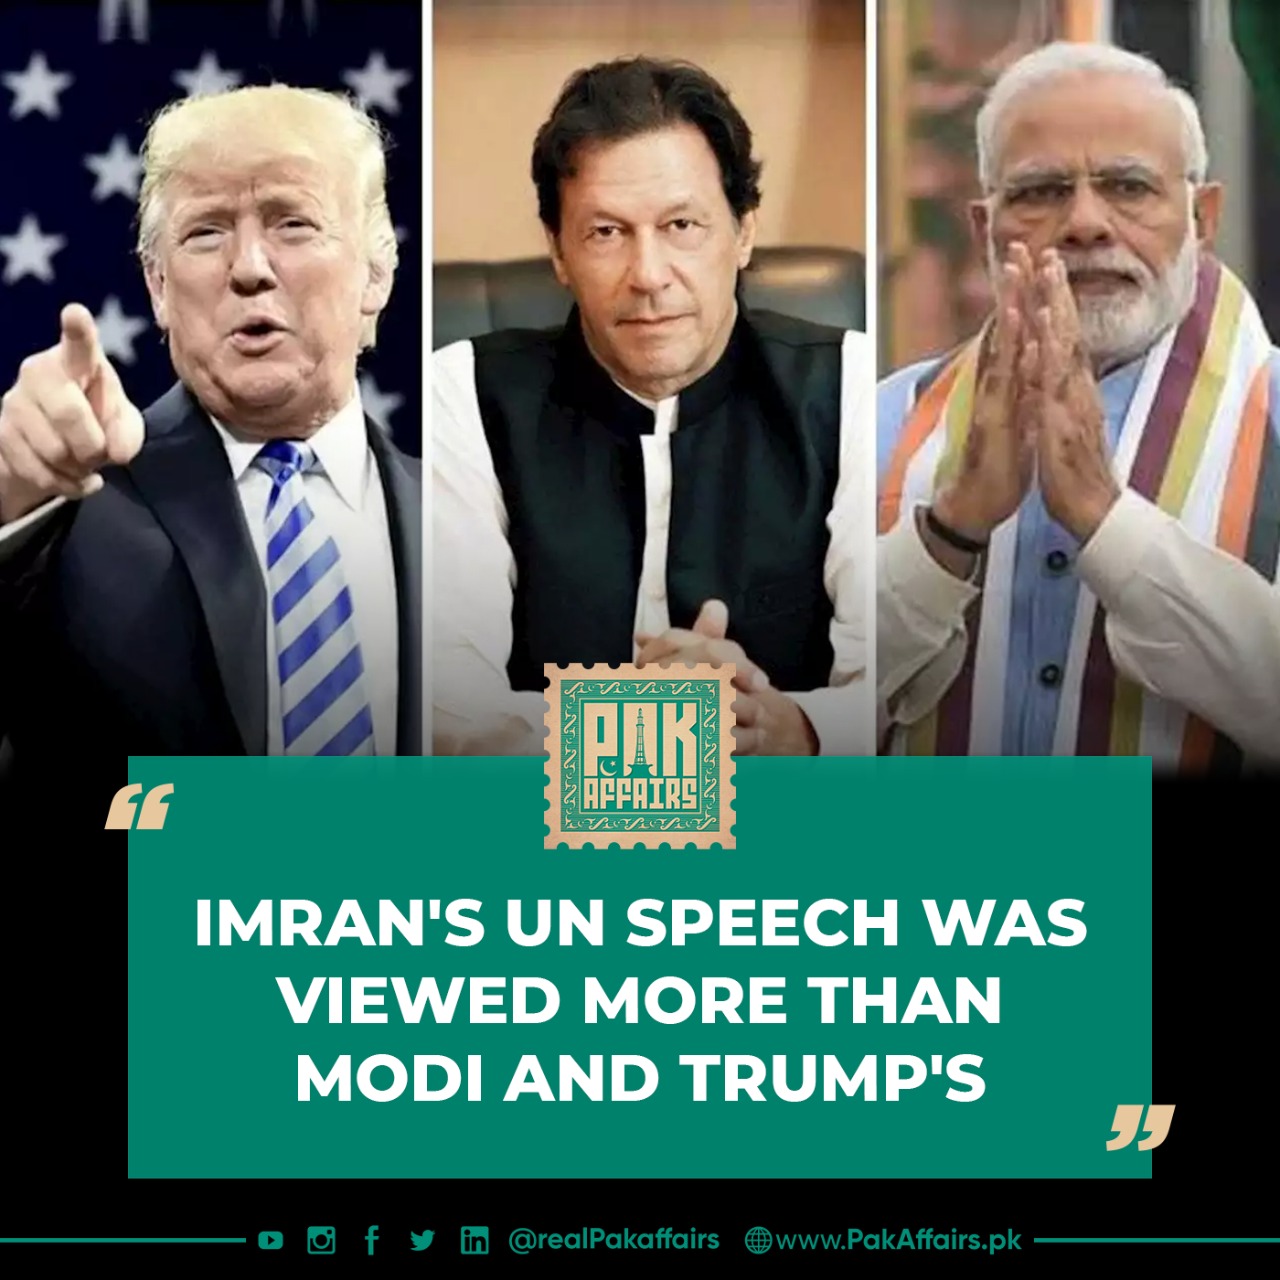 Imran's UN speech was viewed more often than Trump's